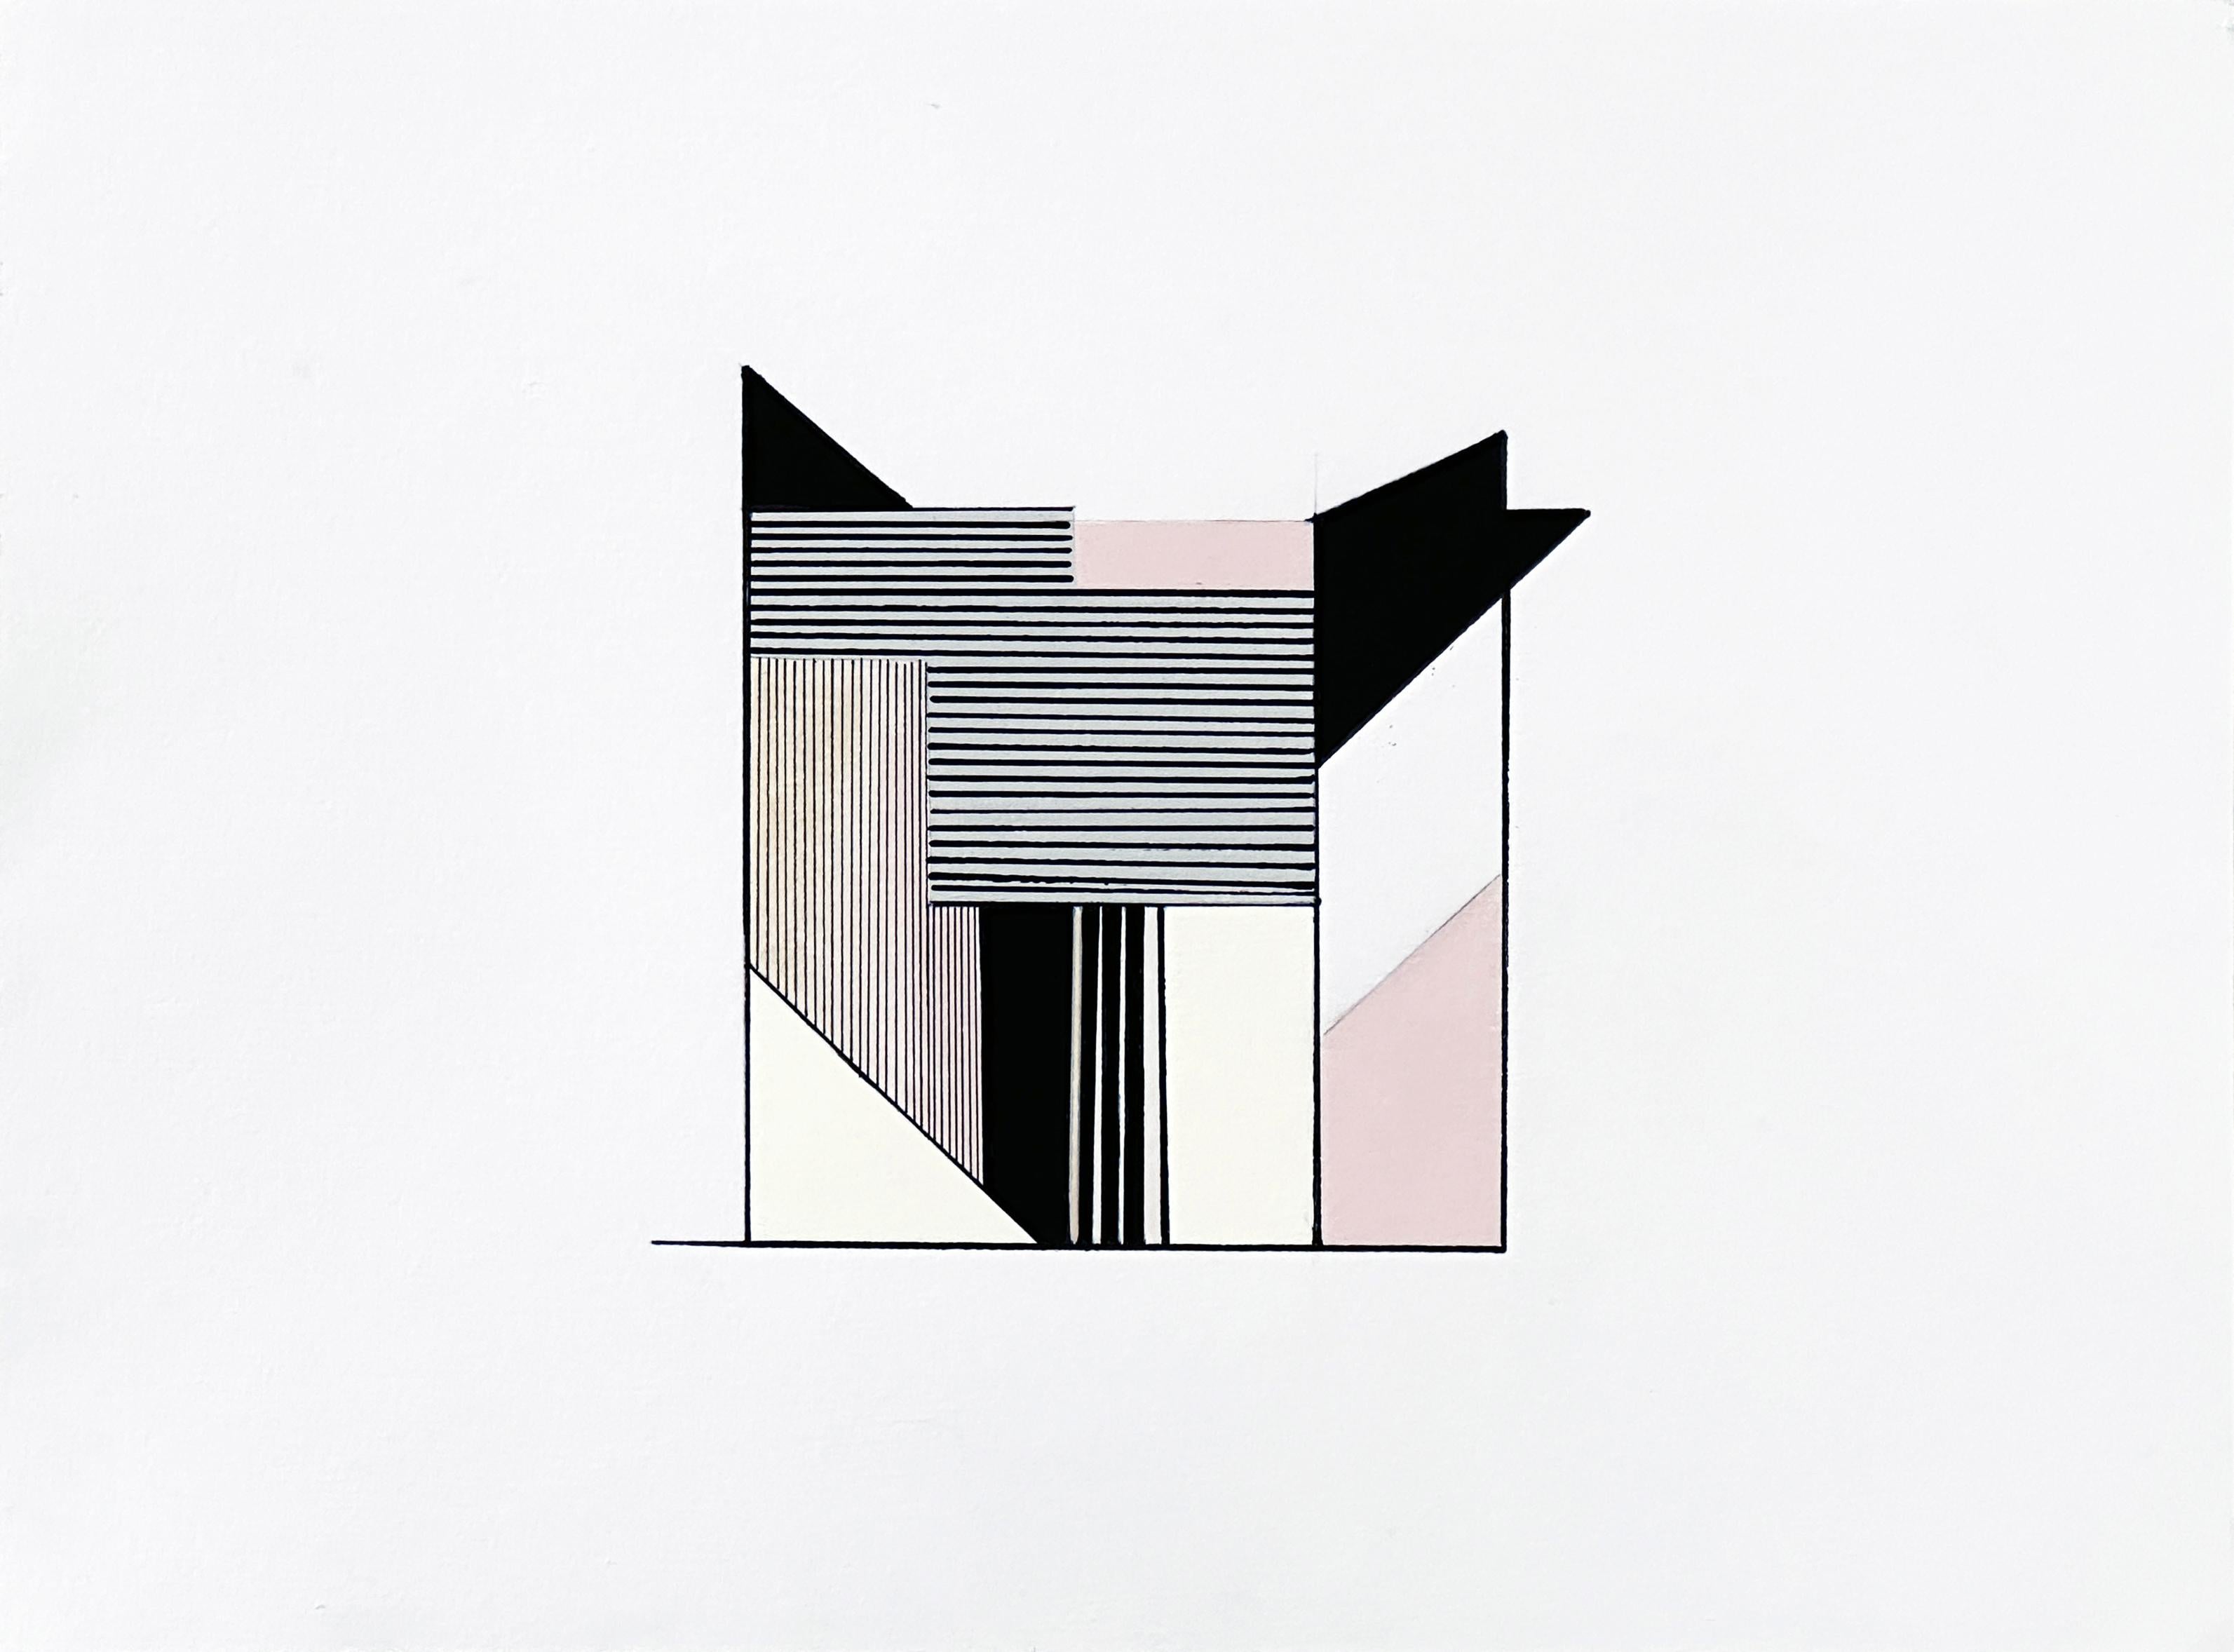 Amanda Andersen Abstract Drawing – "Edifice III" Zeitgenössische Zeichnung, abstrakte Geometrie, natürliche Architektur